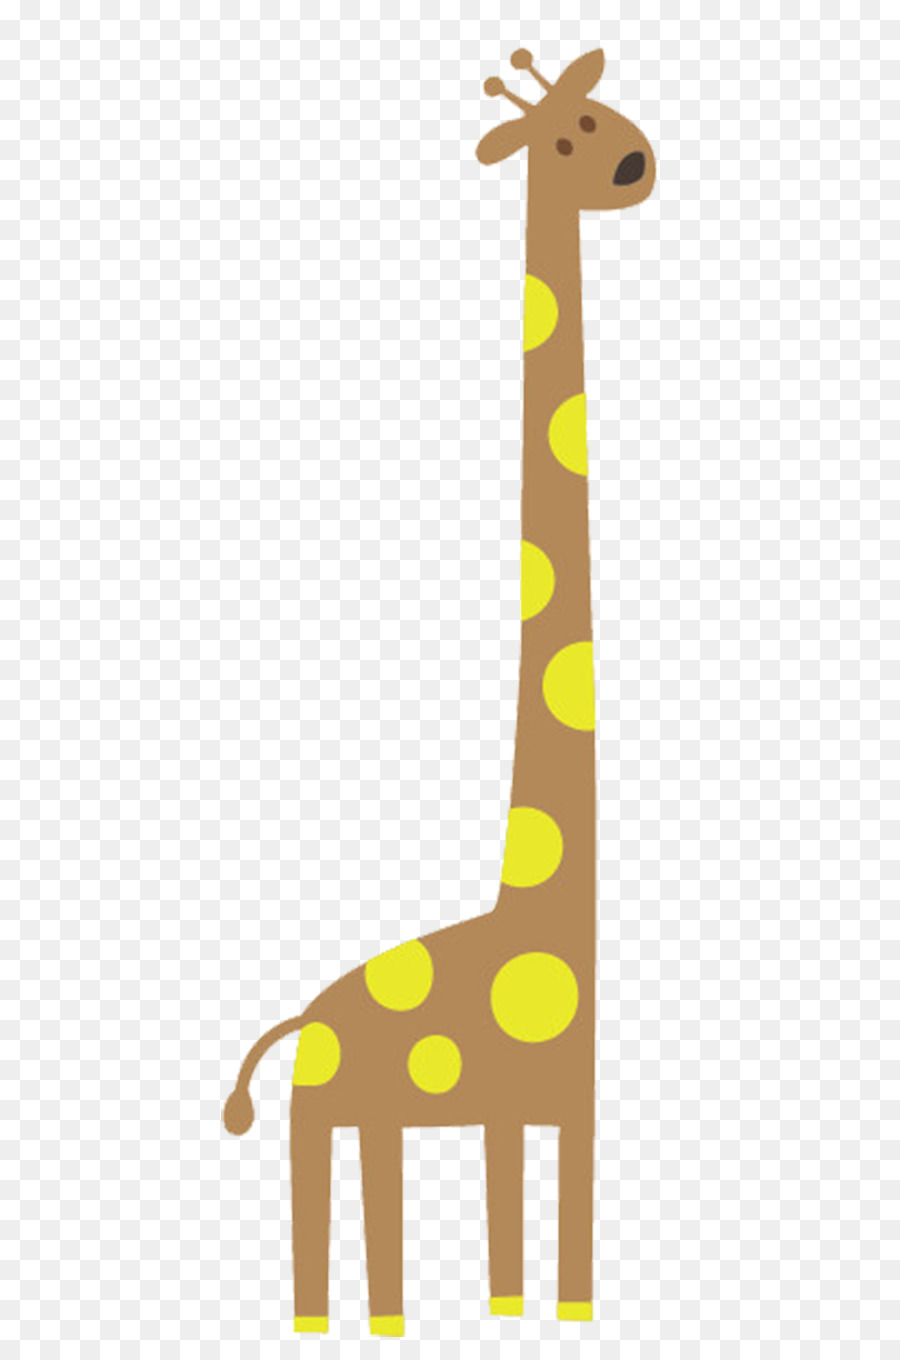 Giraffa Cartoon u0e01u0e32u0e23u0e4cu0e15u0e39u0e19u0e0du0e35u0e48u0e1bu0e38u0e48u0e19 Clip art - cartoon giraffa